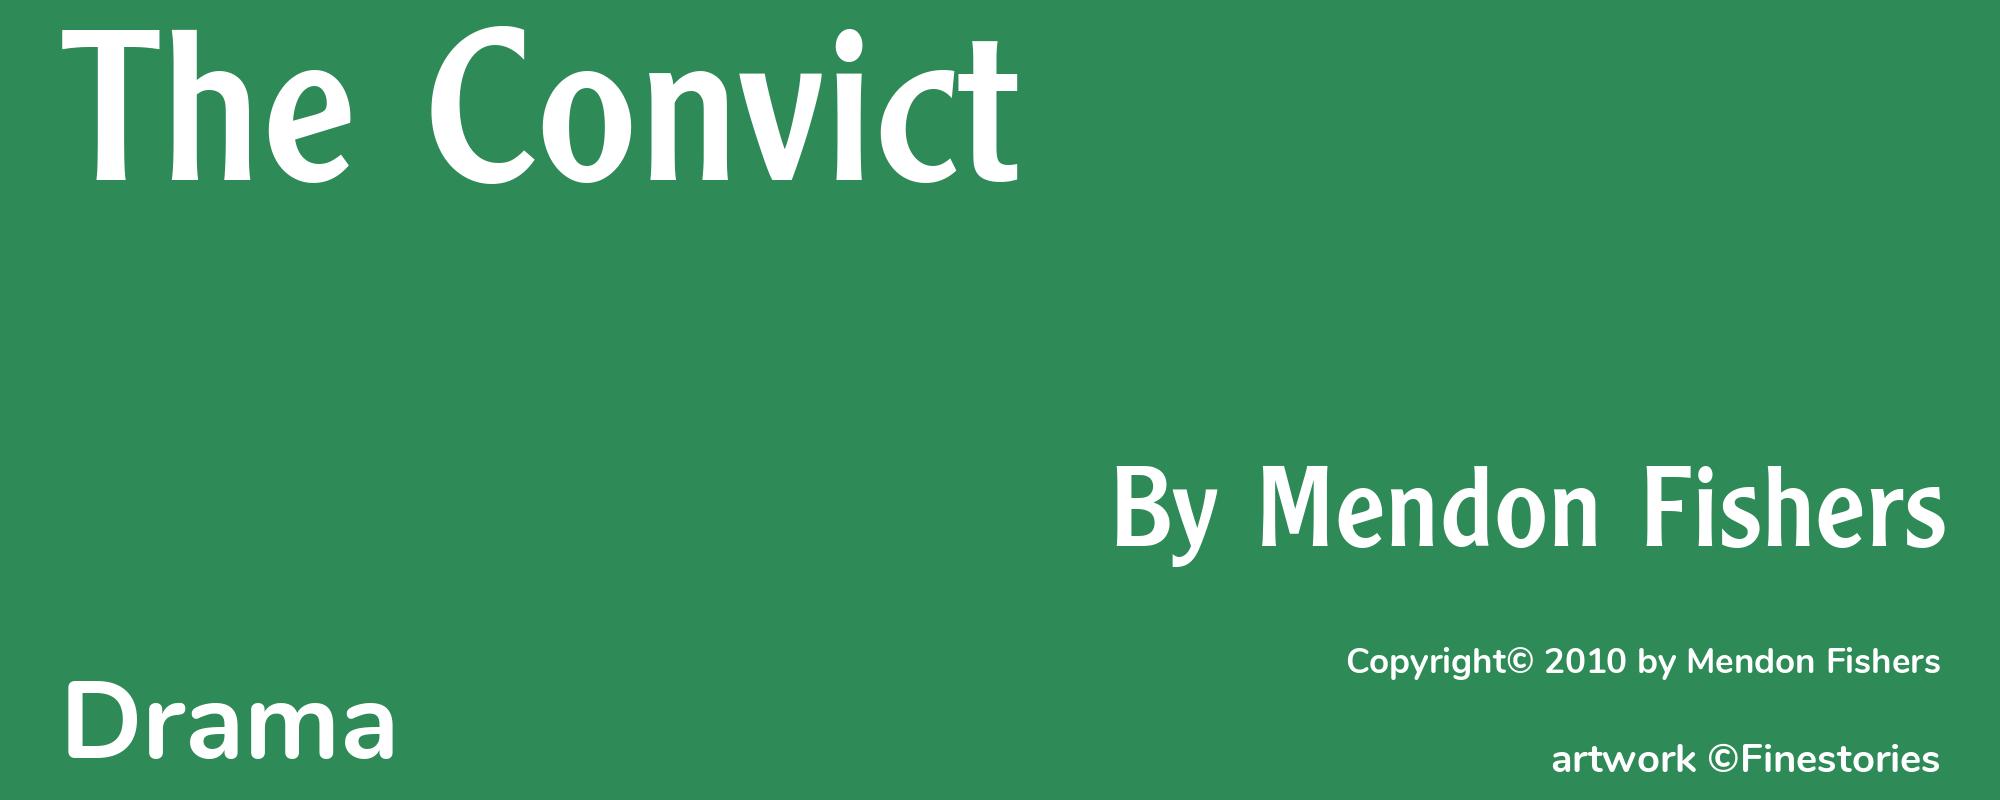 The Convict - Cover